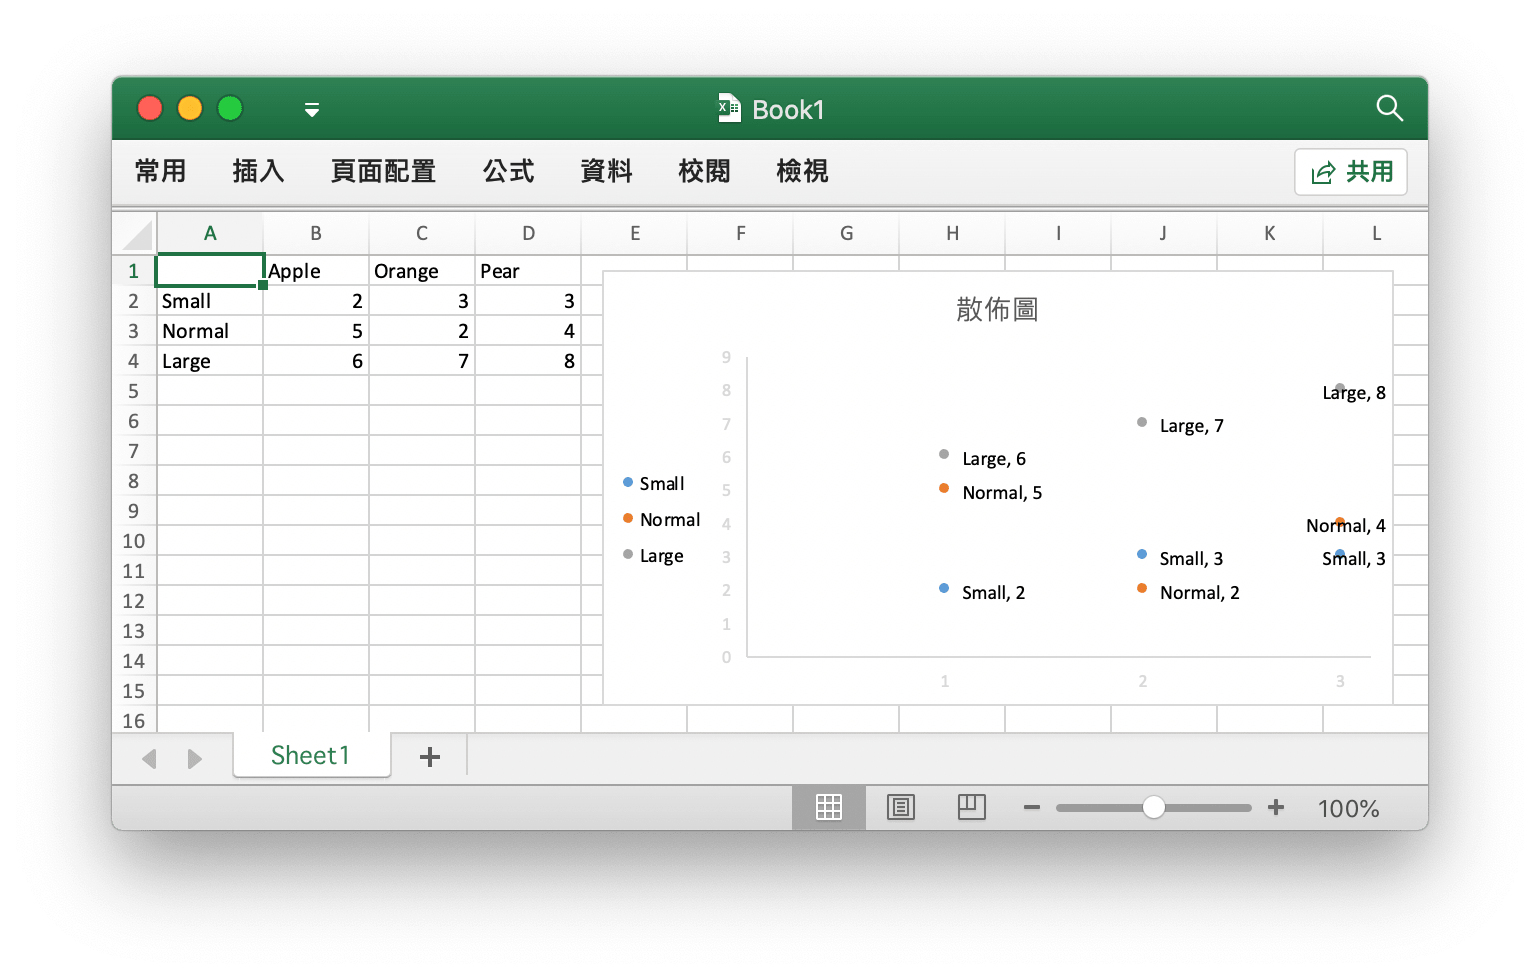 使用 Go 語言在 Excel 文檔中創建散佈圖